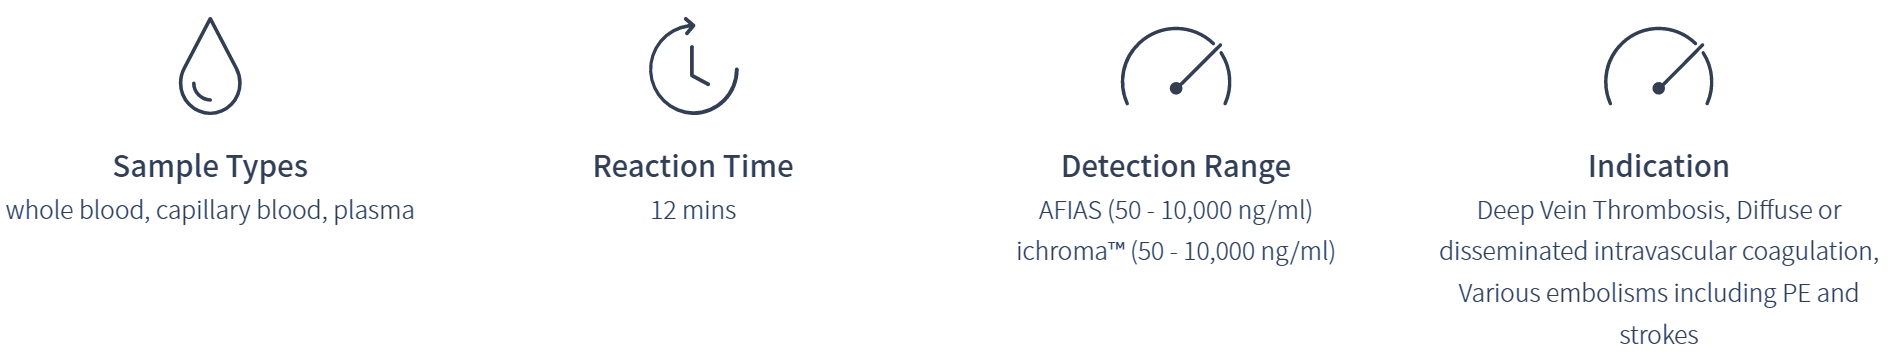 AFIAS D-dimer specifications